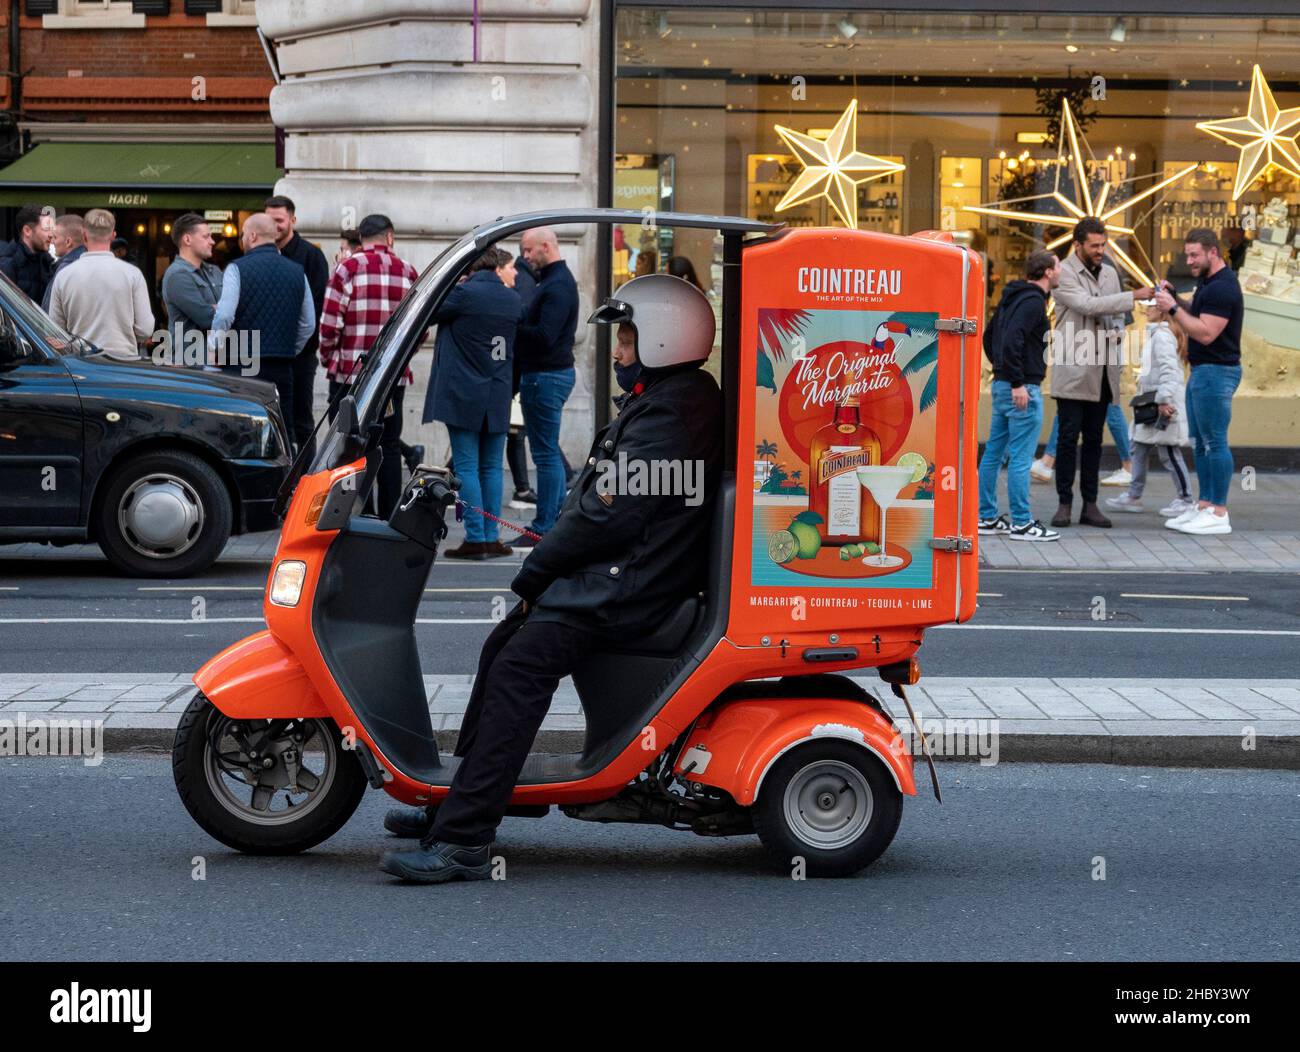 Publicité Cointreau sur scooter Banque D'Images